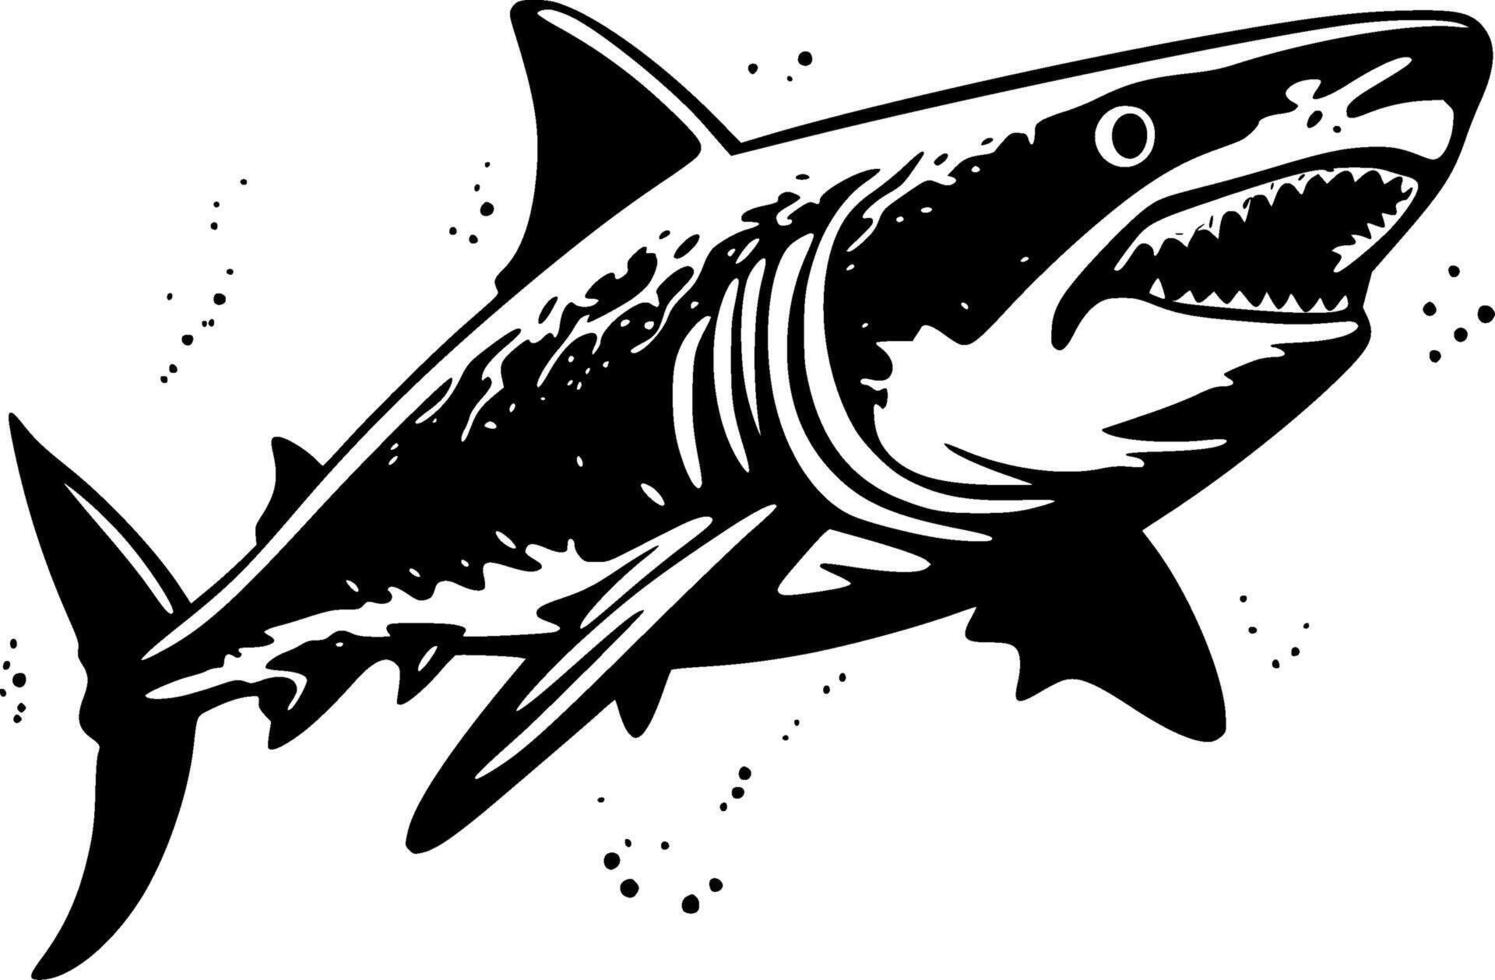 requin, noir et blanc illustration vecteur